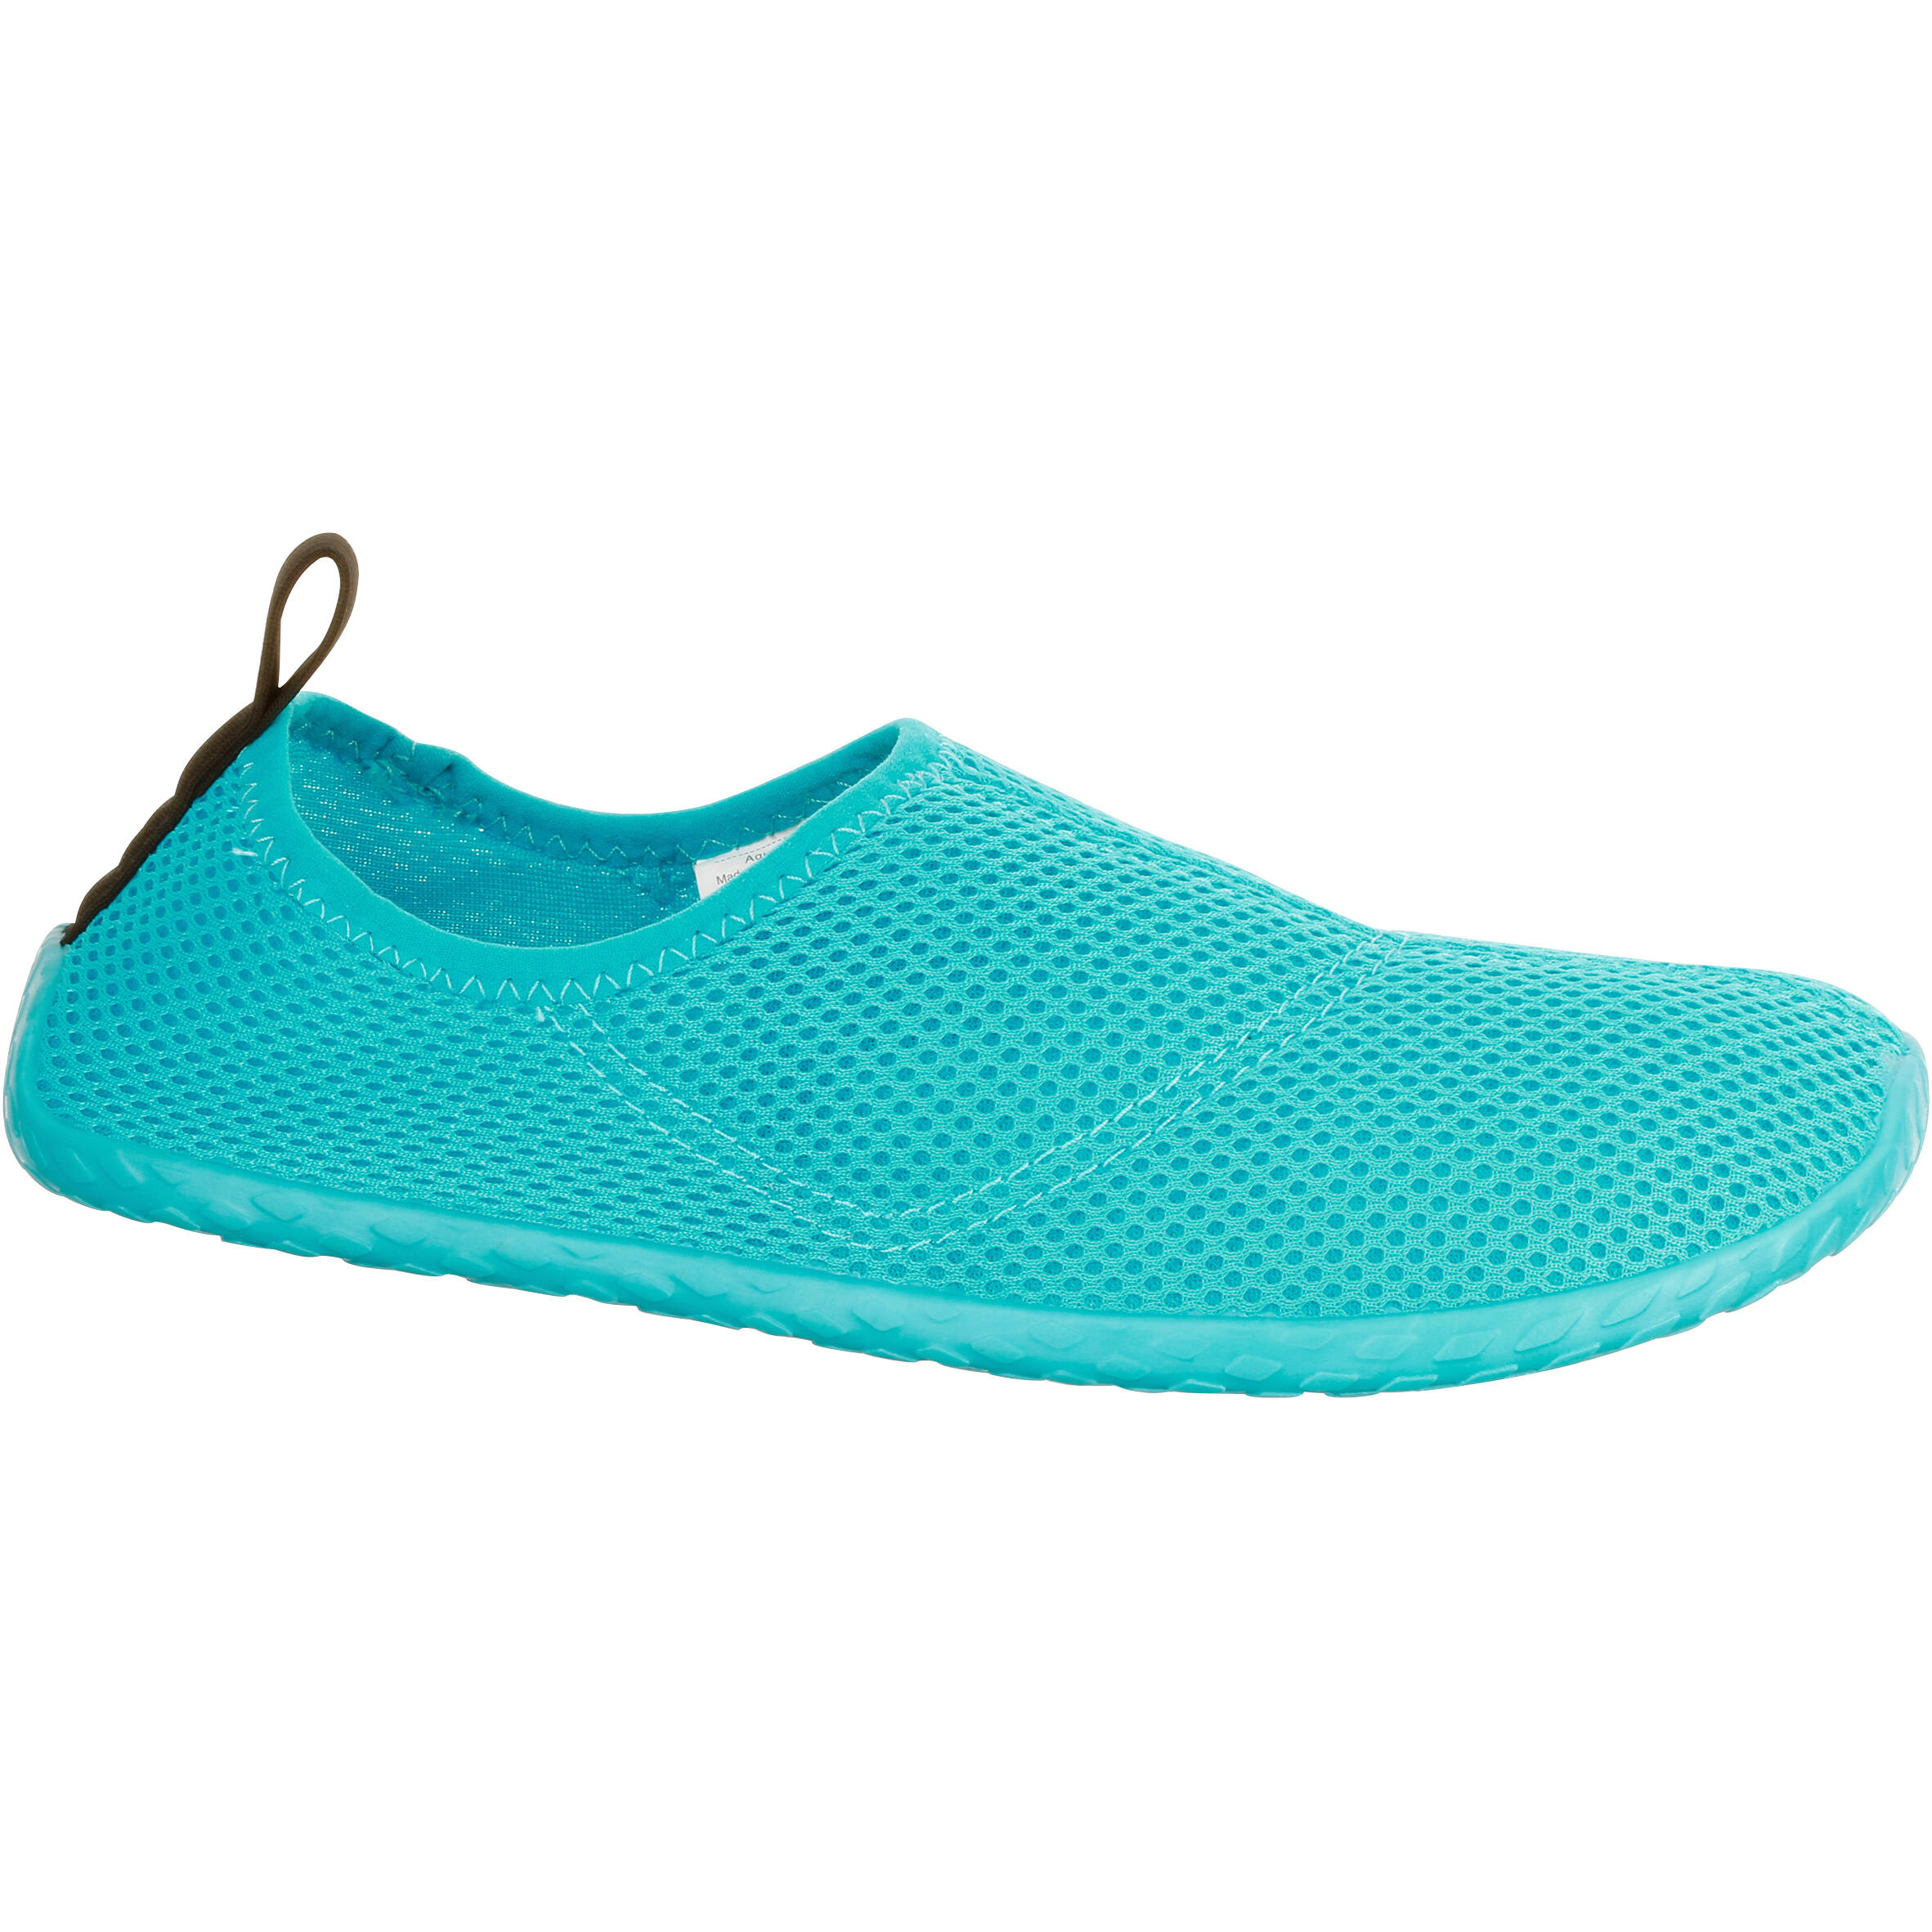 decathlon aqua shoes